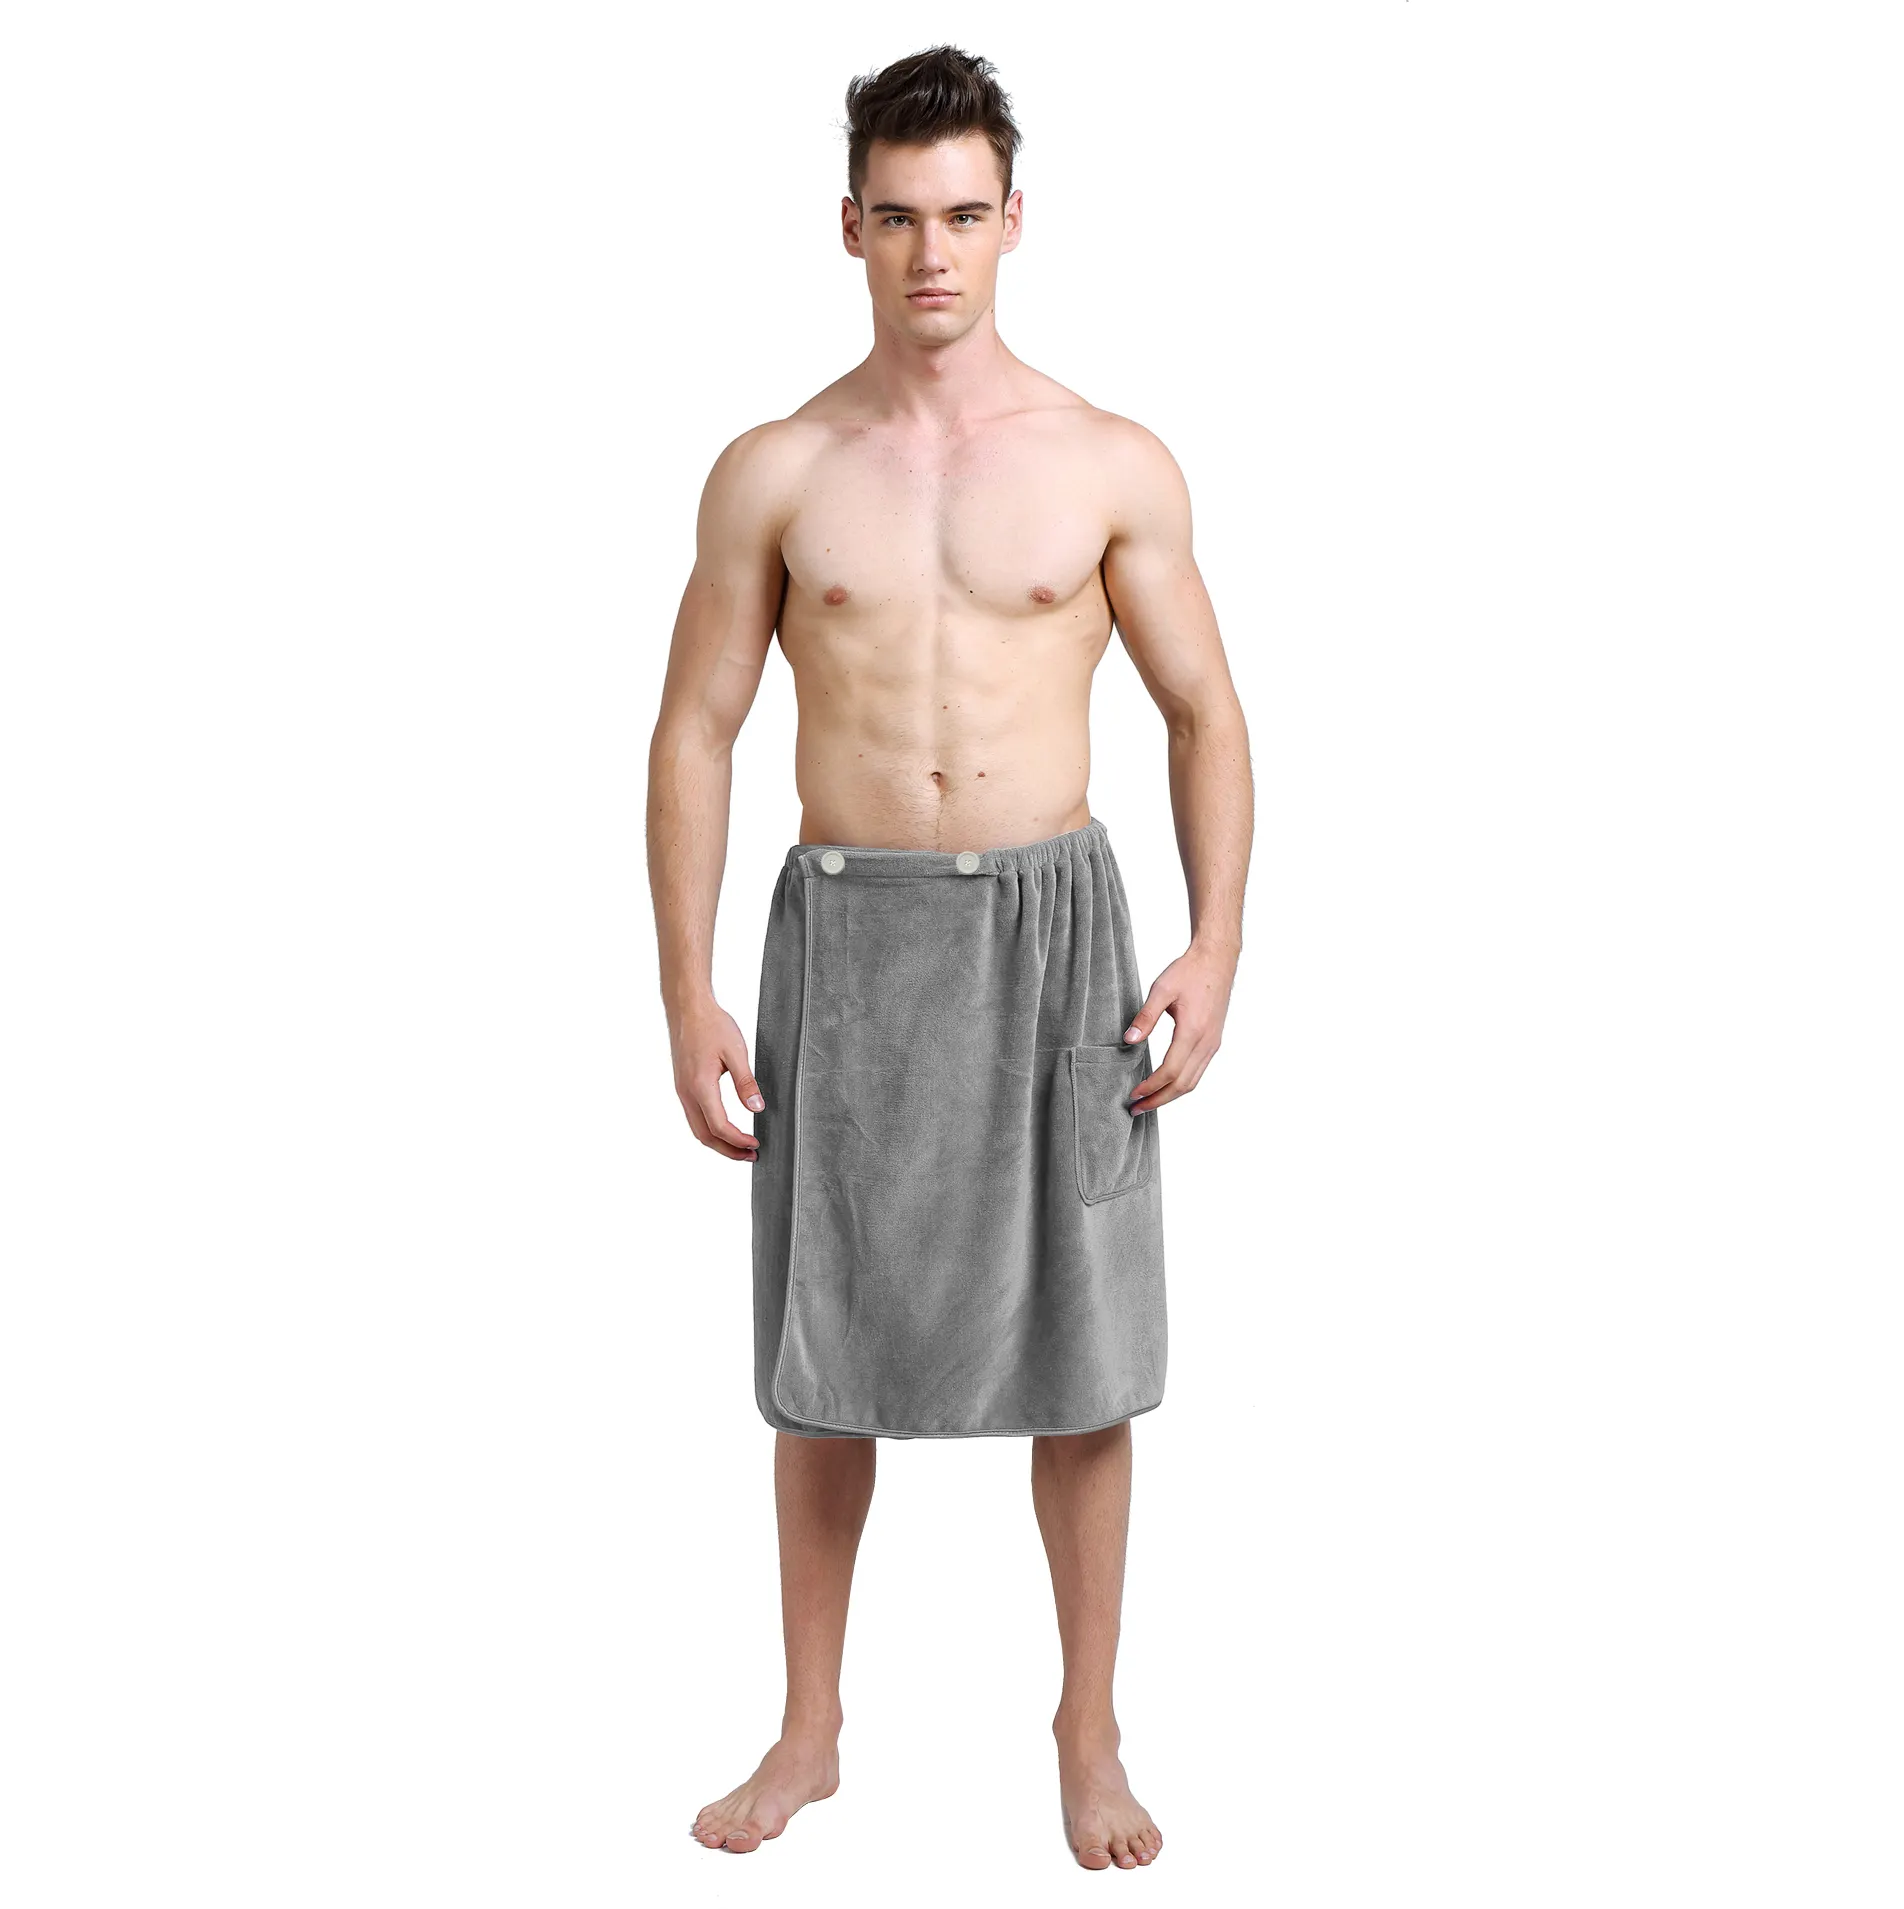 Sunland الأكثر شعبية الرجال سبا حمام دش منشفة ملفوفة